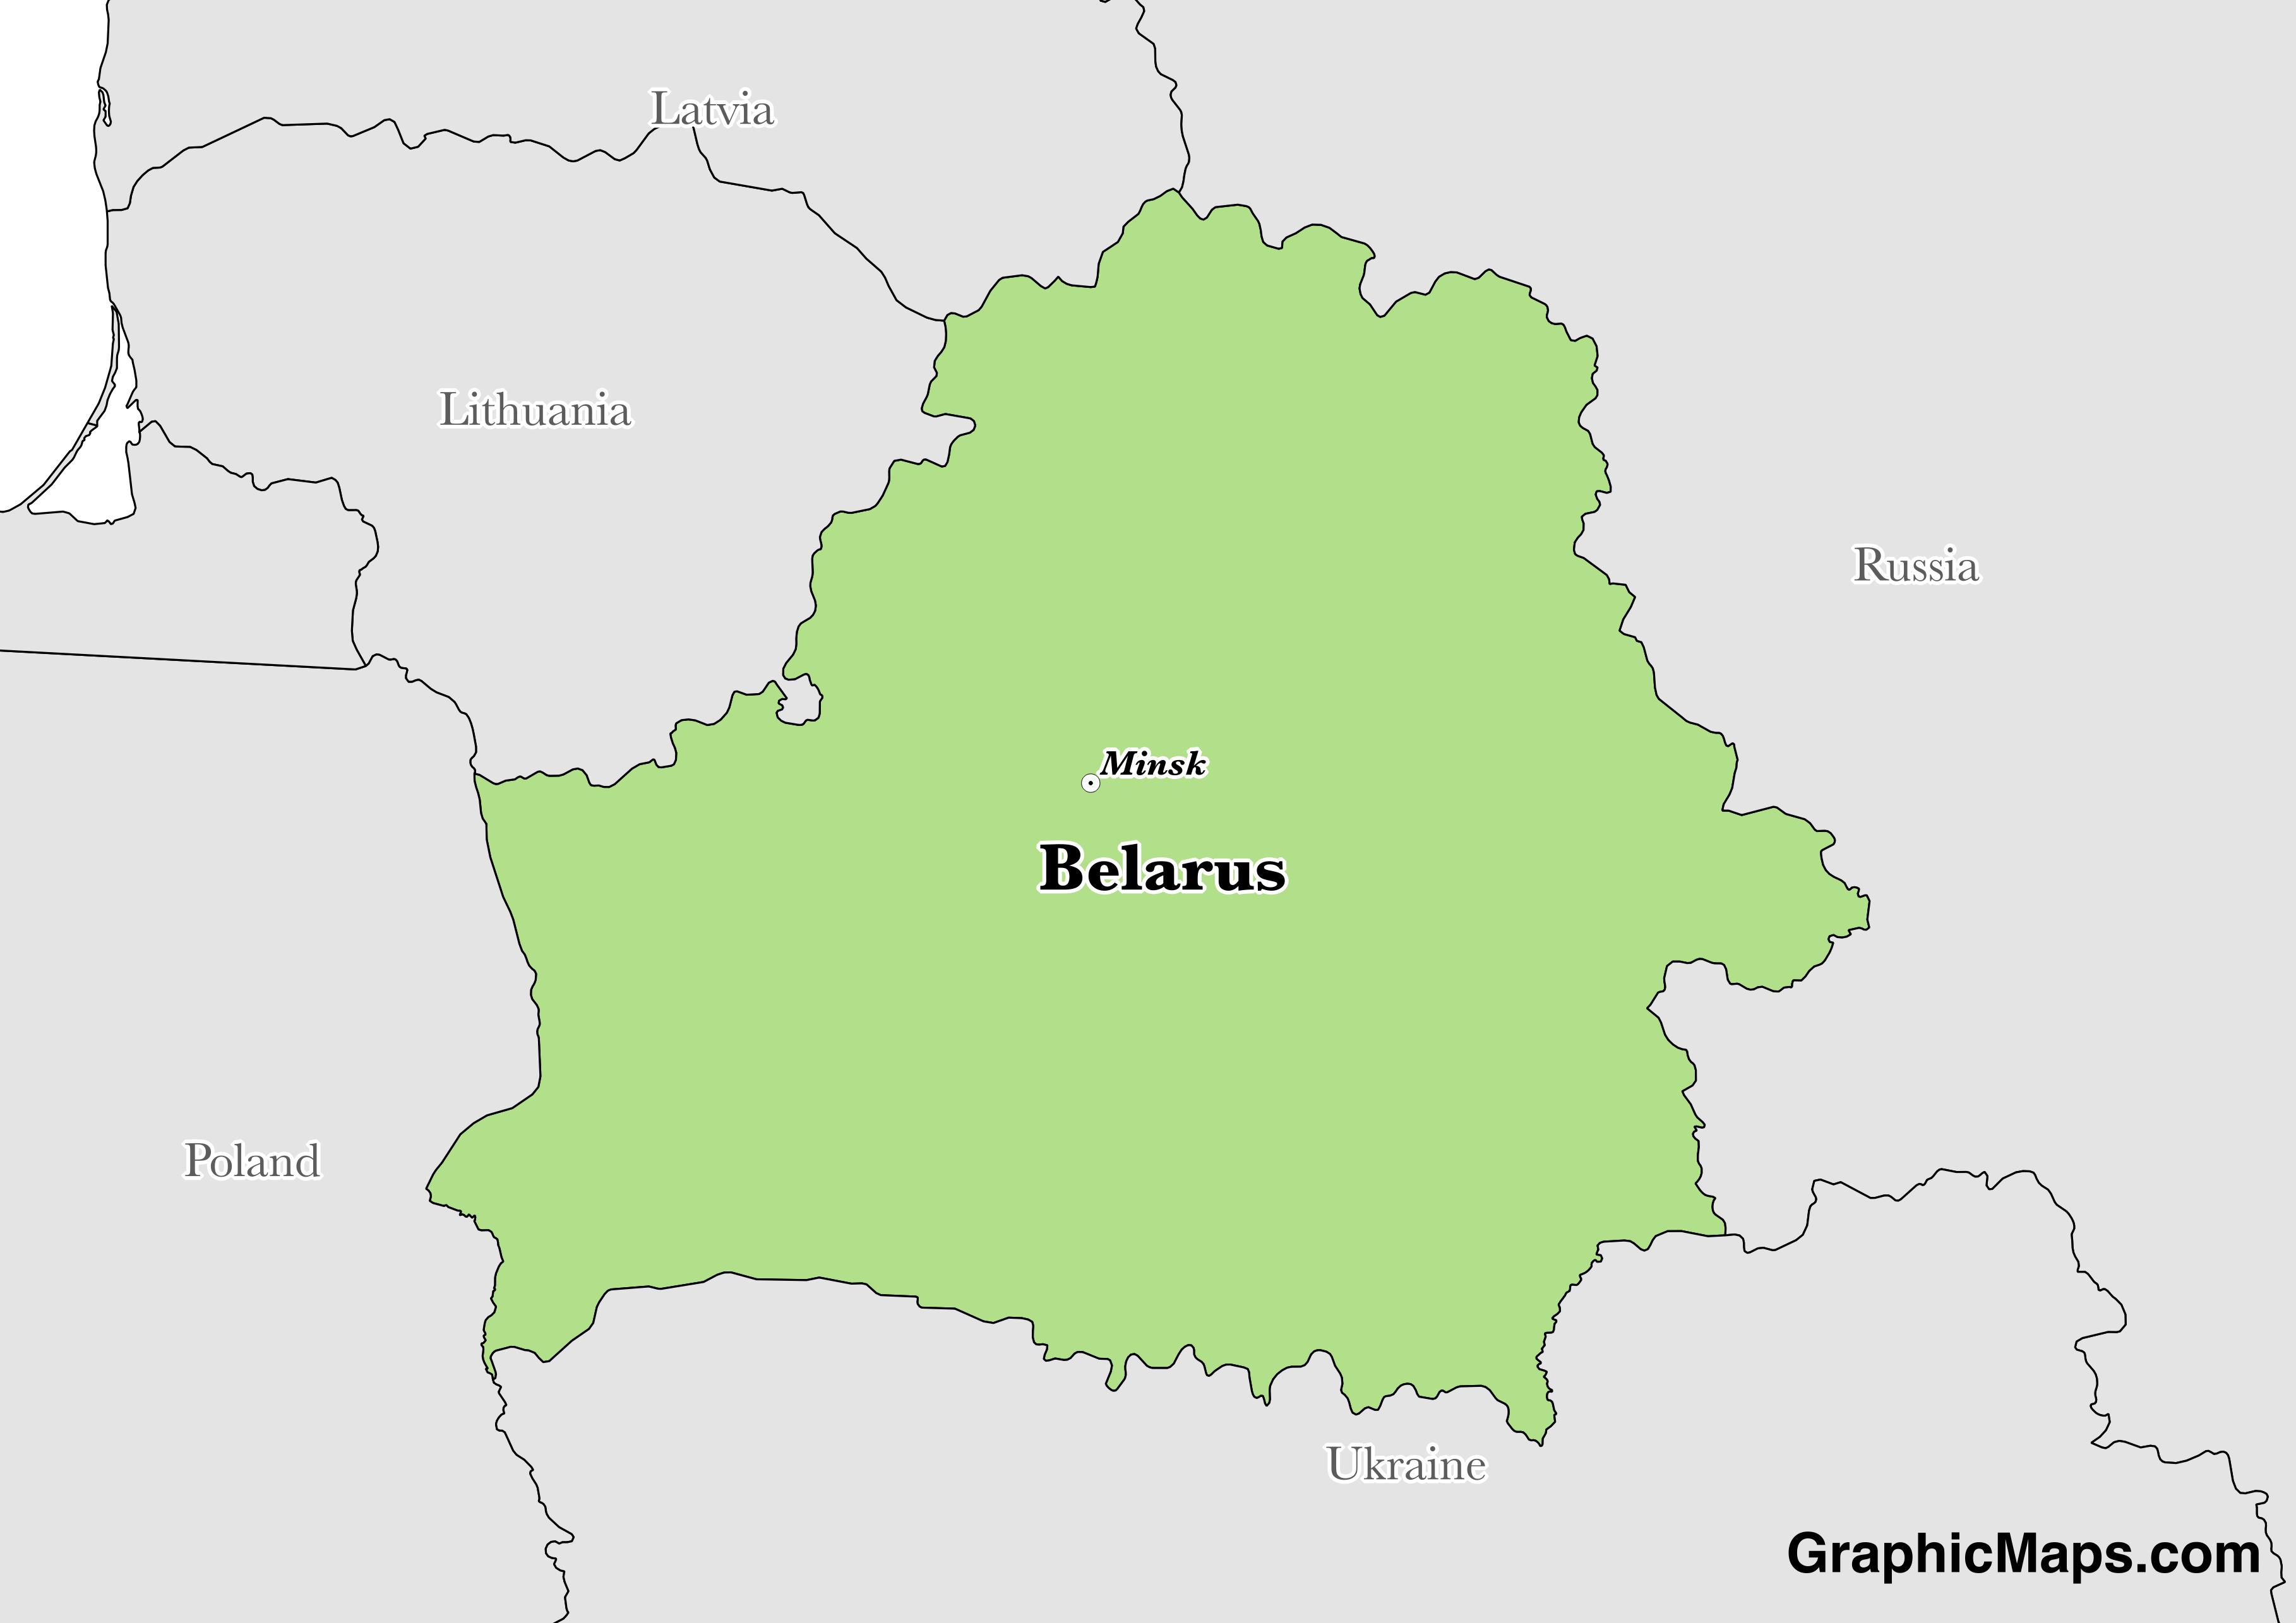 Belarus /